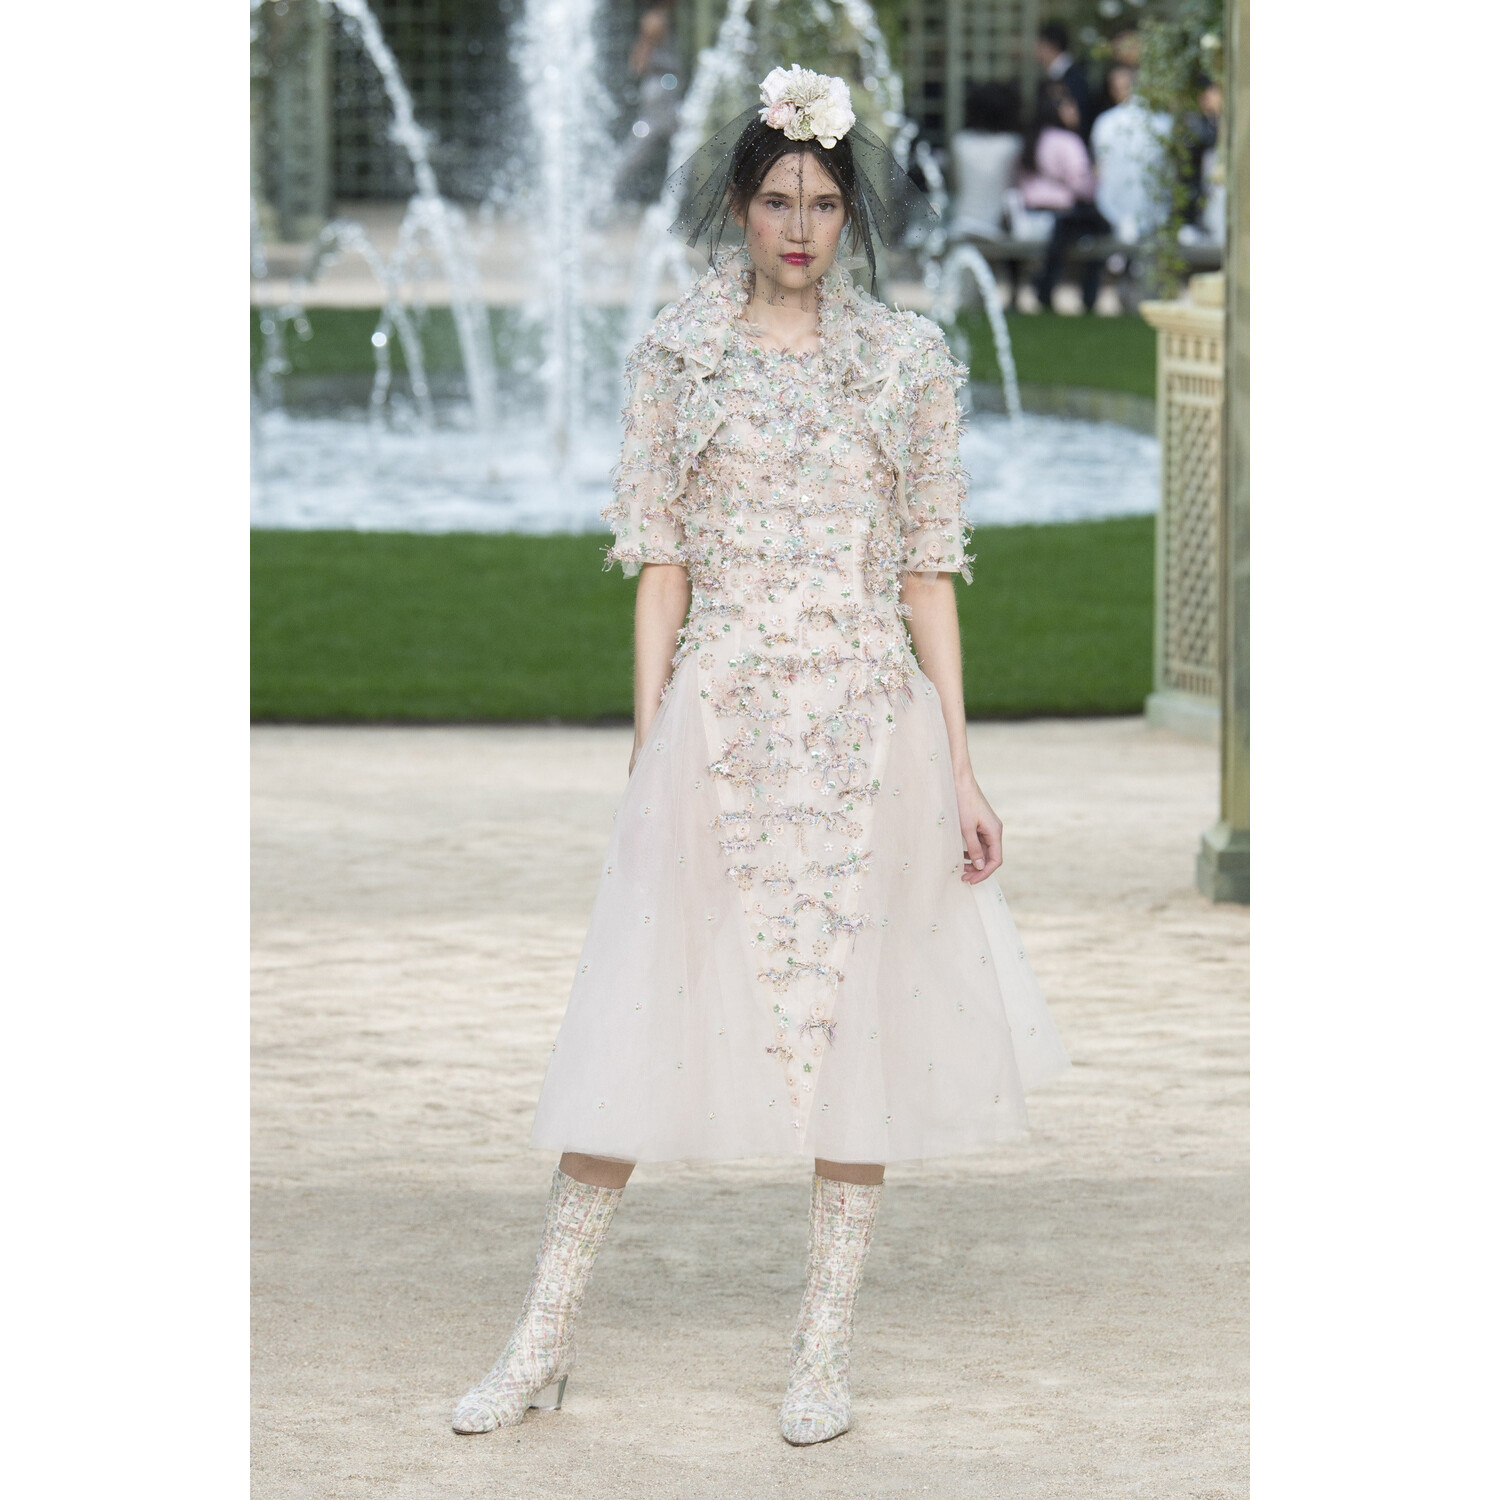 Фото Chanel SPRING 2018 COUTURE Paris PFW коллекция 2018 Шанель лето 2018 неделя высокой моды в Париже Mainstyles